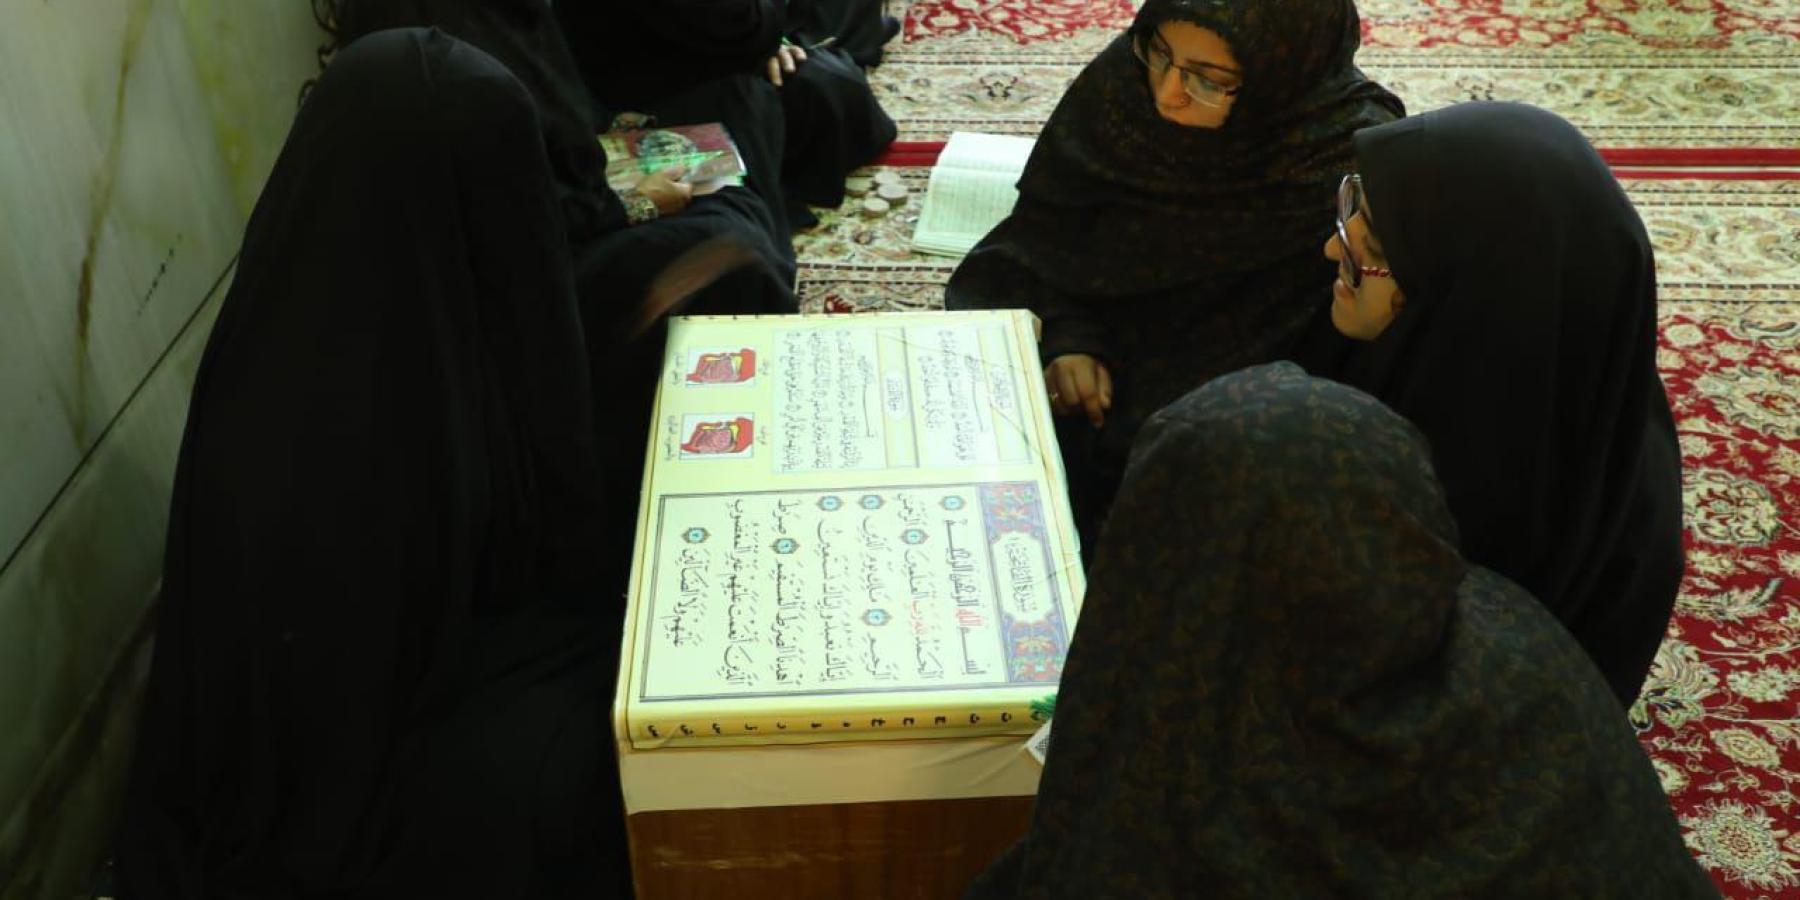 معهد الكوثر القرآني يطلق مشروع الإستراحة القرآنية داخل العتبة العلوية المقدسة للزائرات